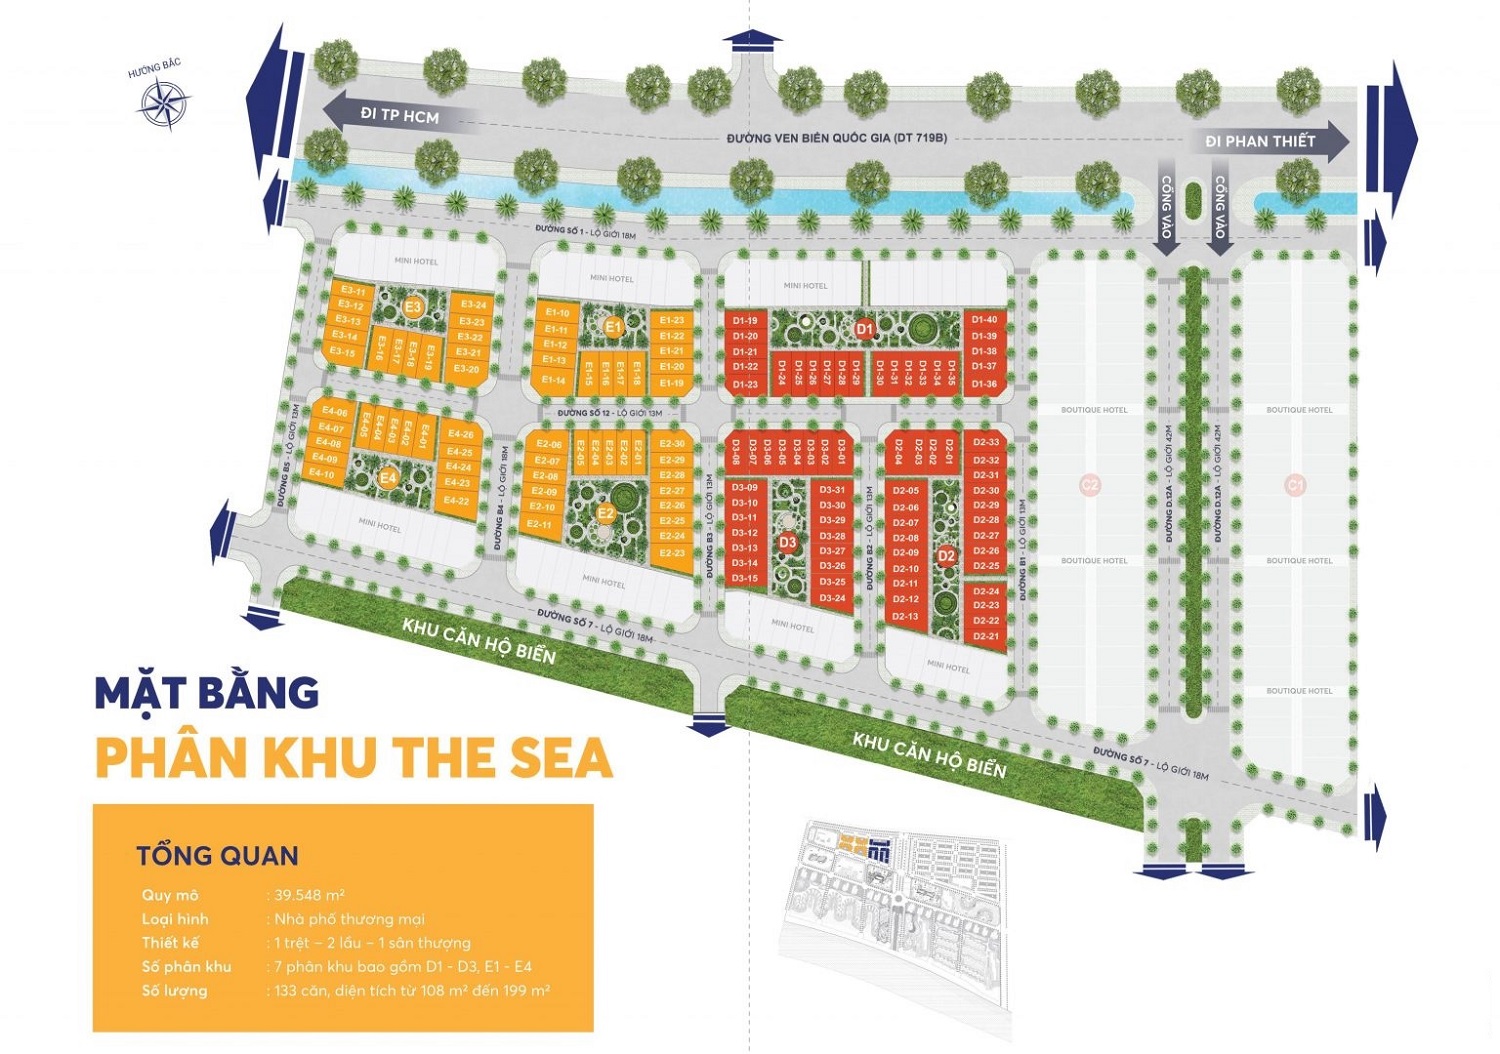 Mặt bằng phân khu The Sea dự án Thanh Long Bay